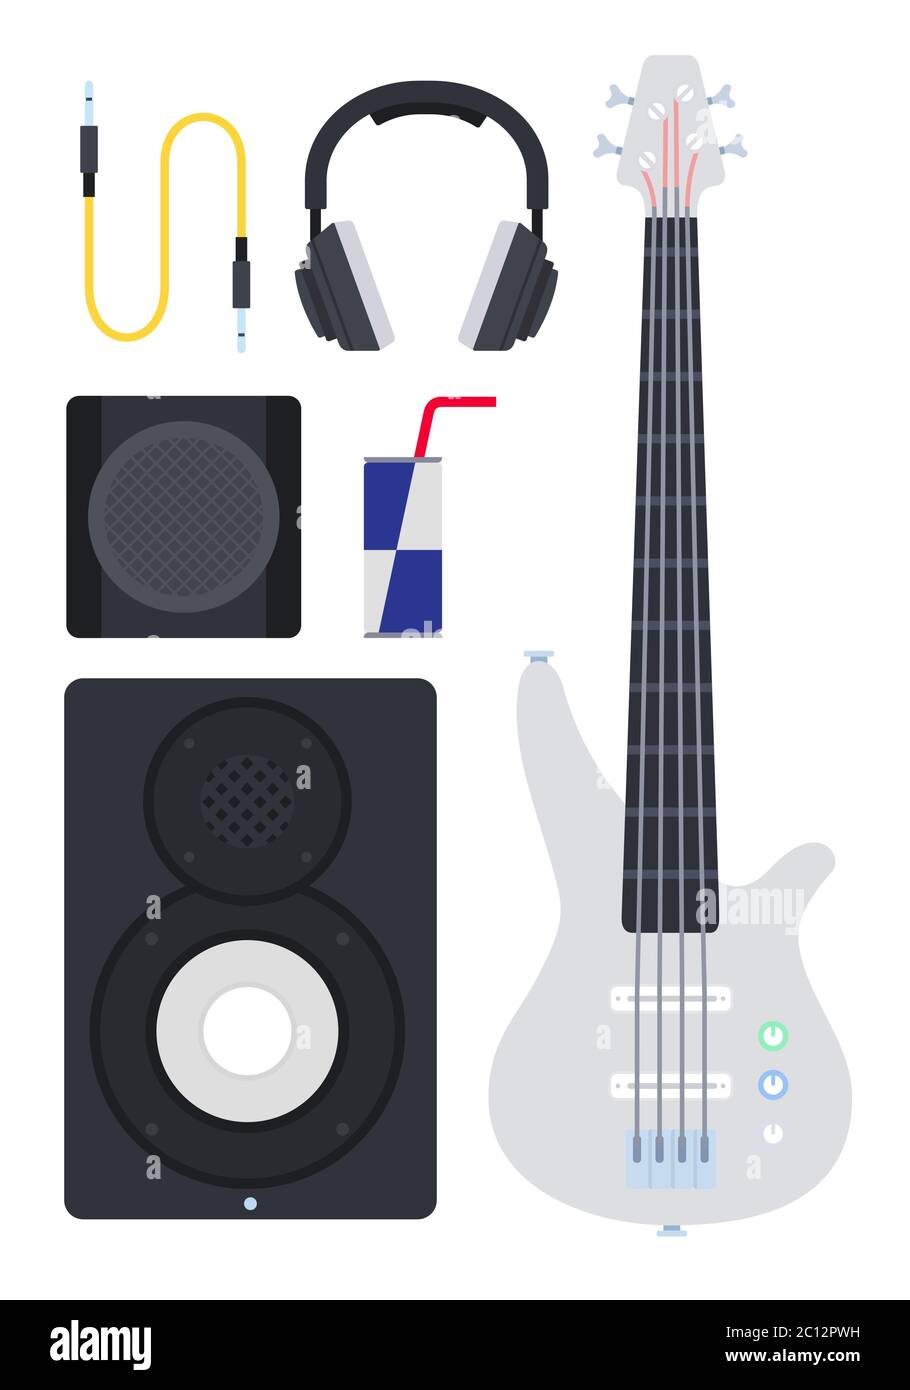 Jeu de guitare électrique, système de haut-parleurs et illustration vectorielle de casque dans un design plat. Illustration de Vecteur